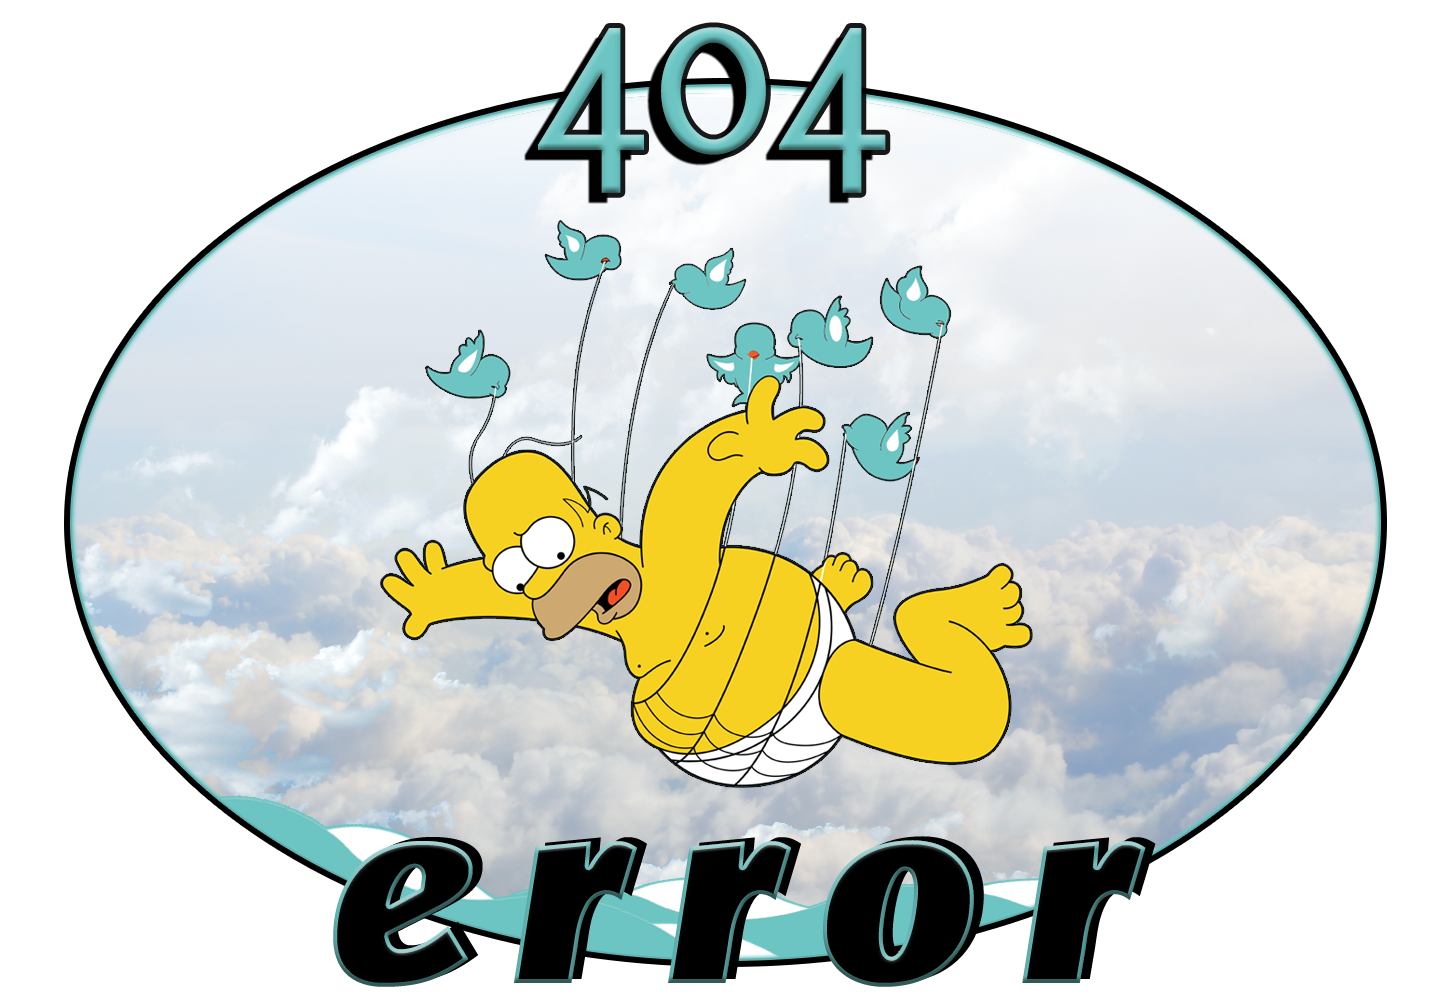 Error 404 Full